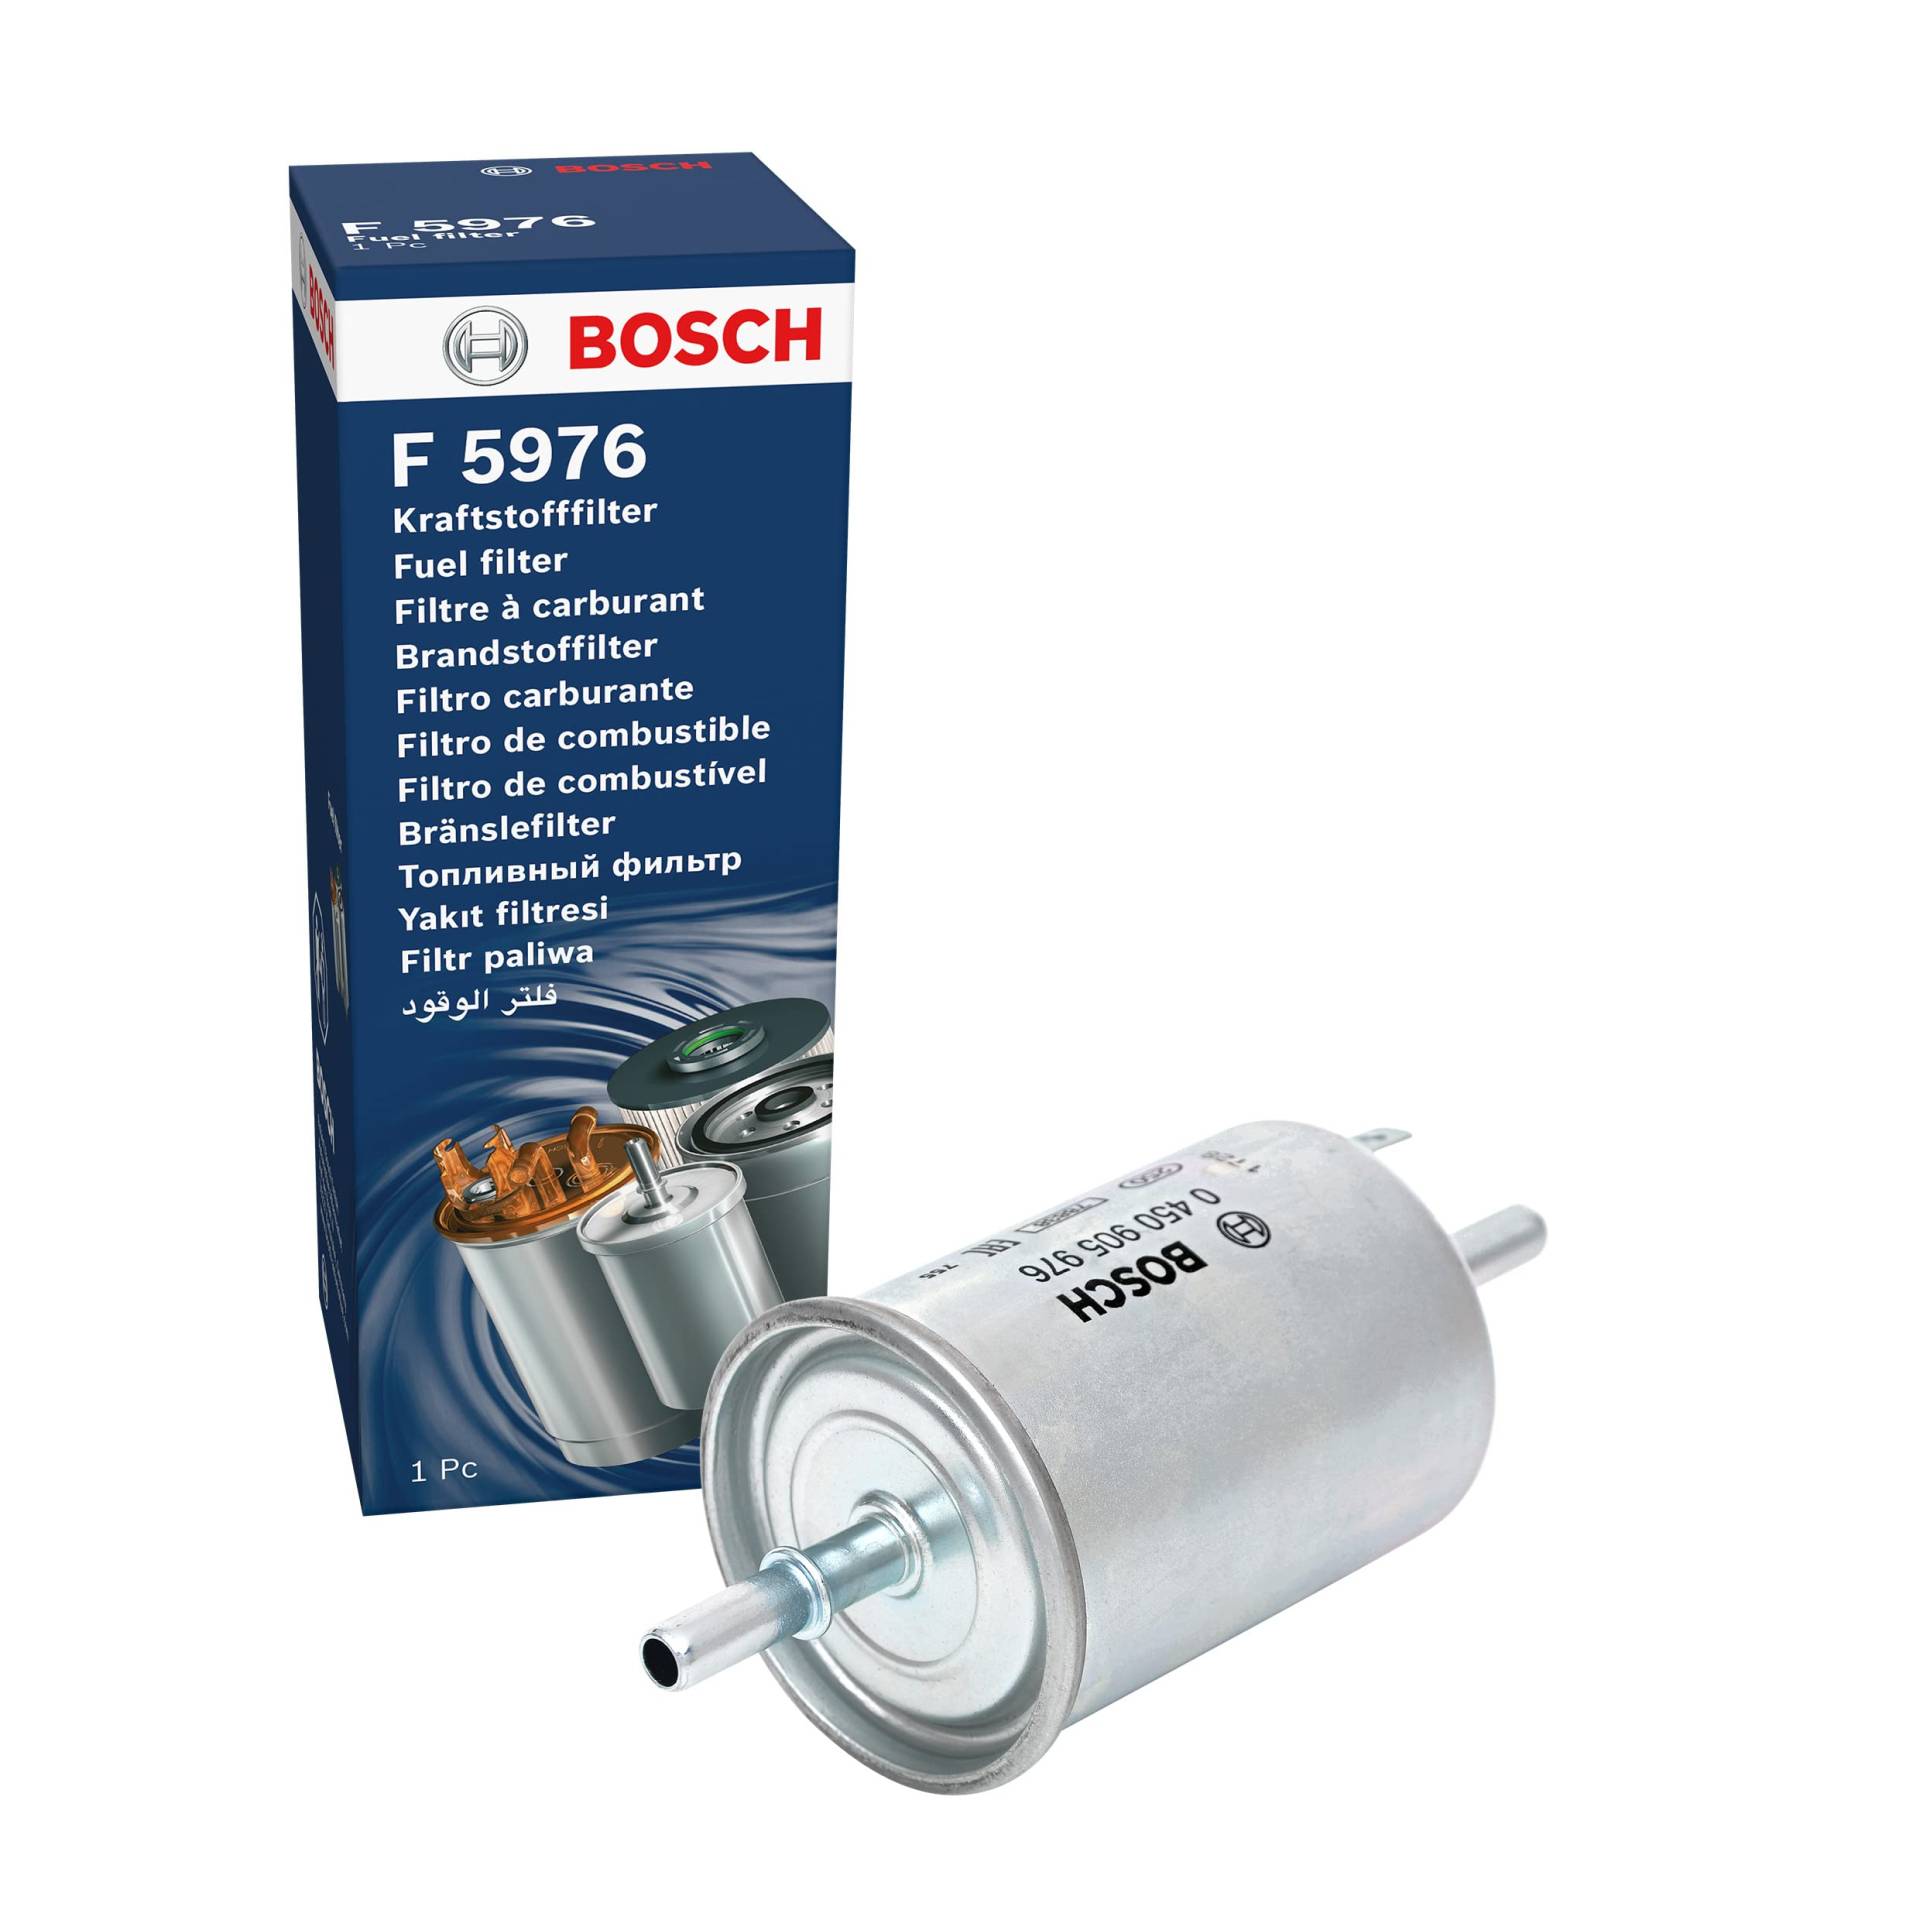 Bosch F5976 - Benzinfilter Auto von Bosch Automotive